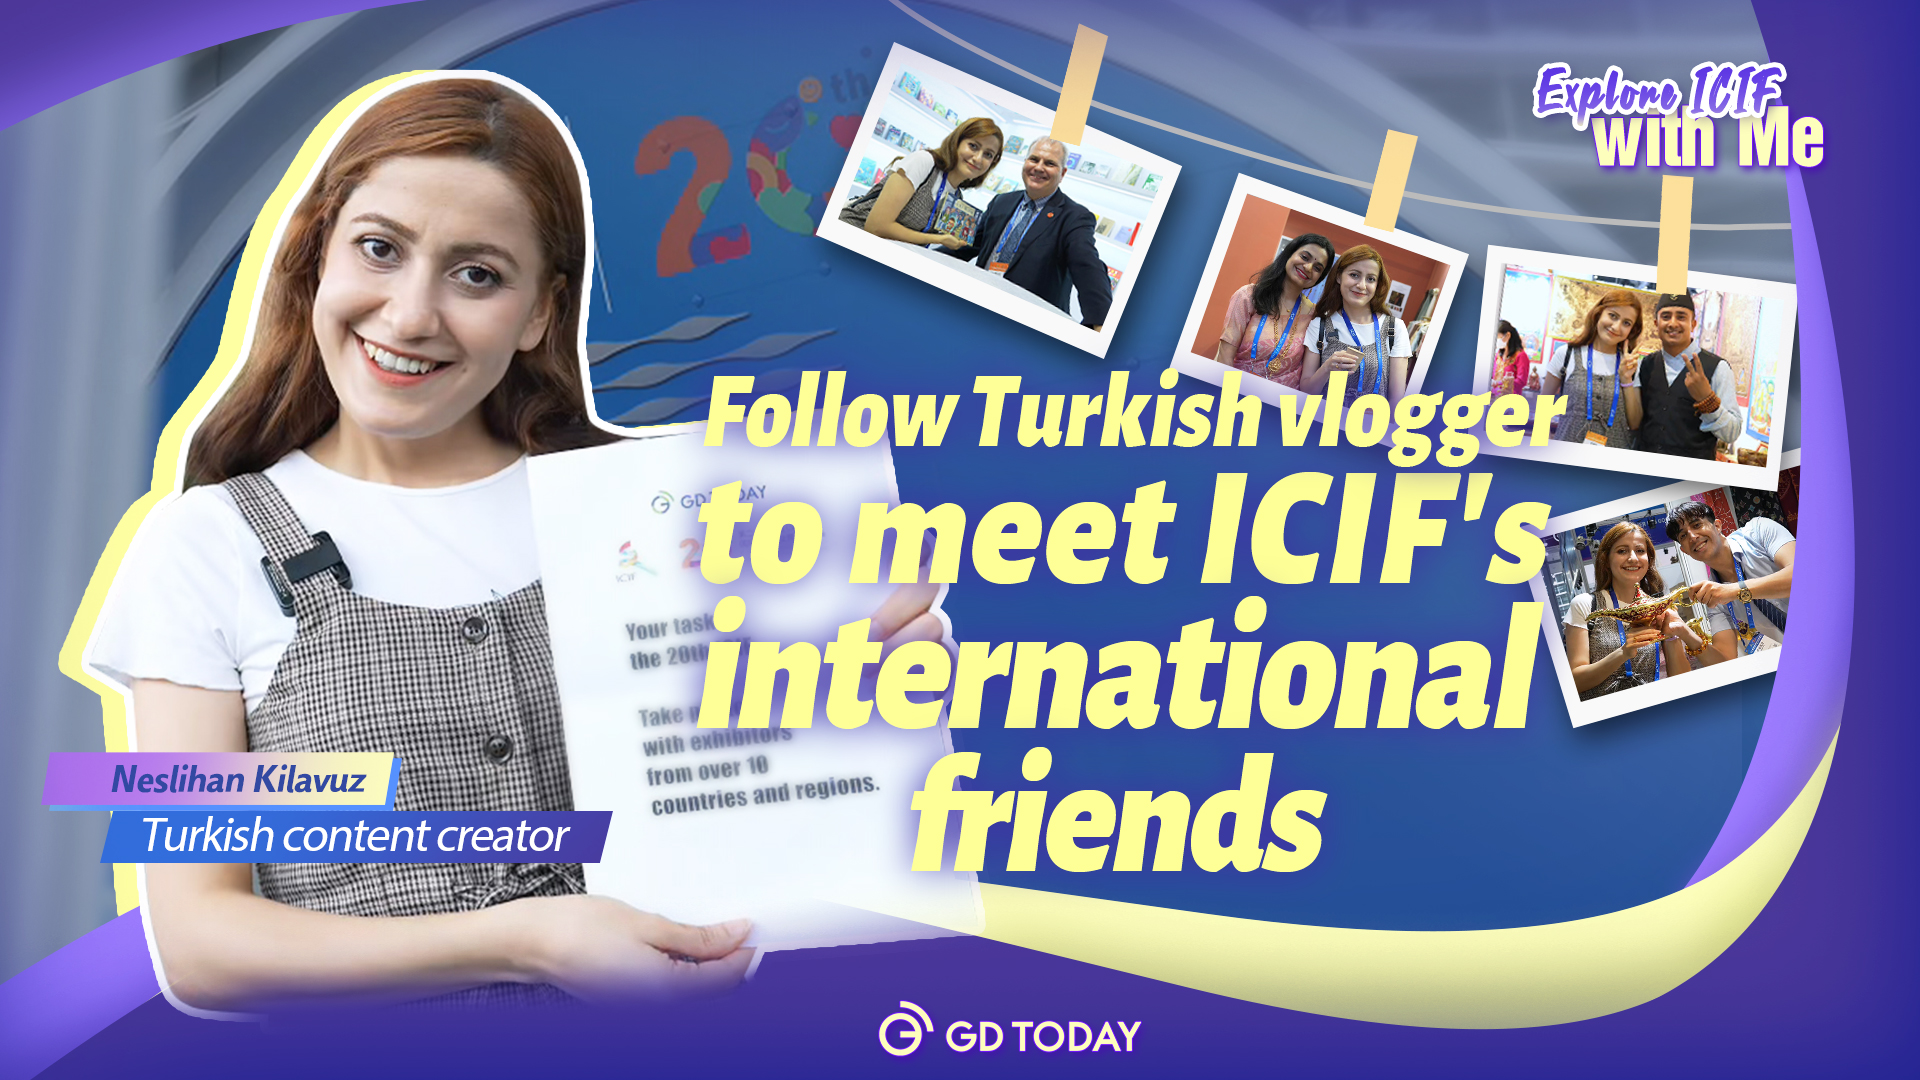 Exclamations des étrangers à l’égard de l’ICIF│La vlogueuse turque retrouve des amis internationaux de l’ICIF